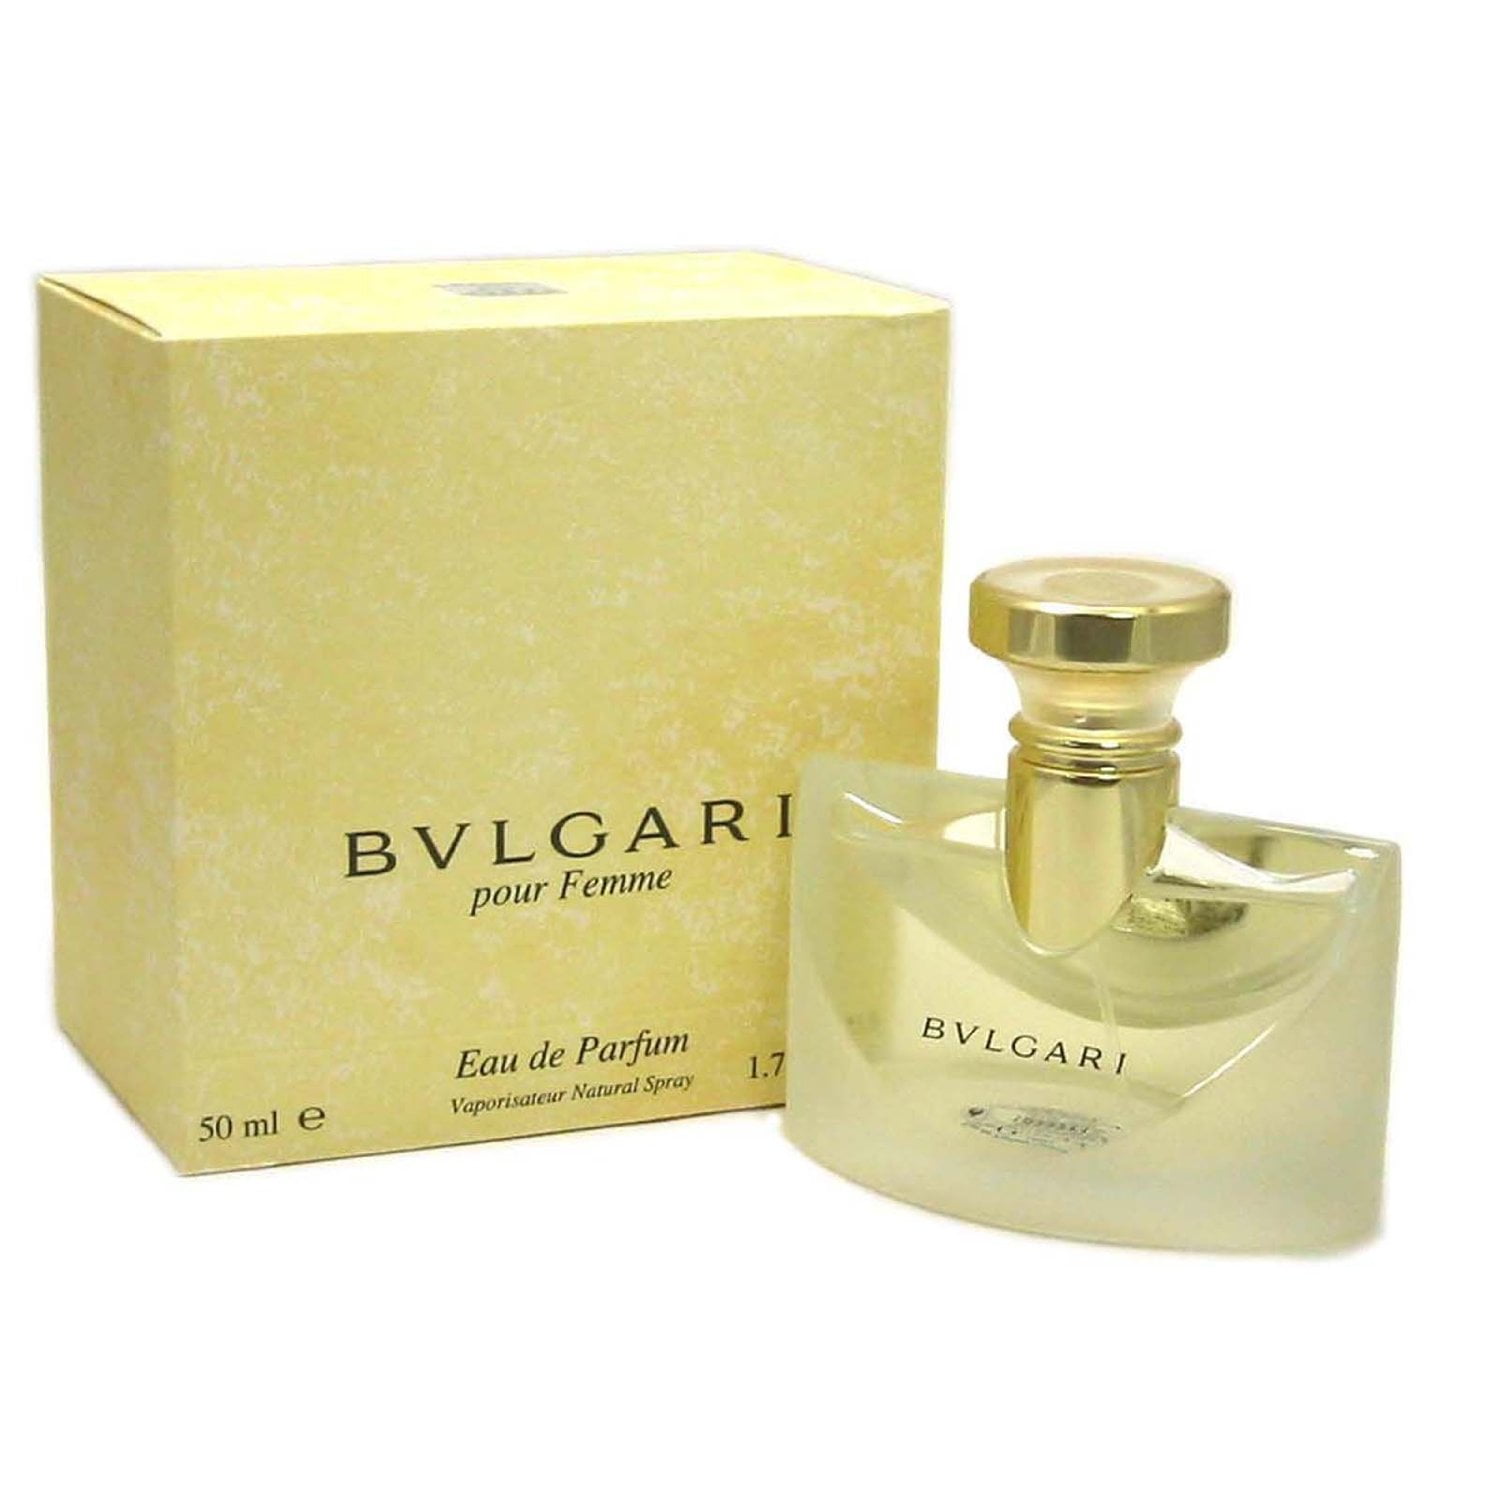 bvlgari perfume women's pour femme